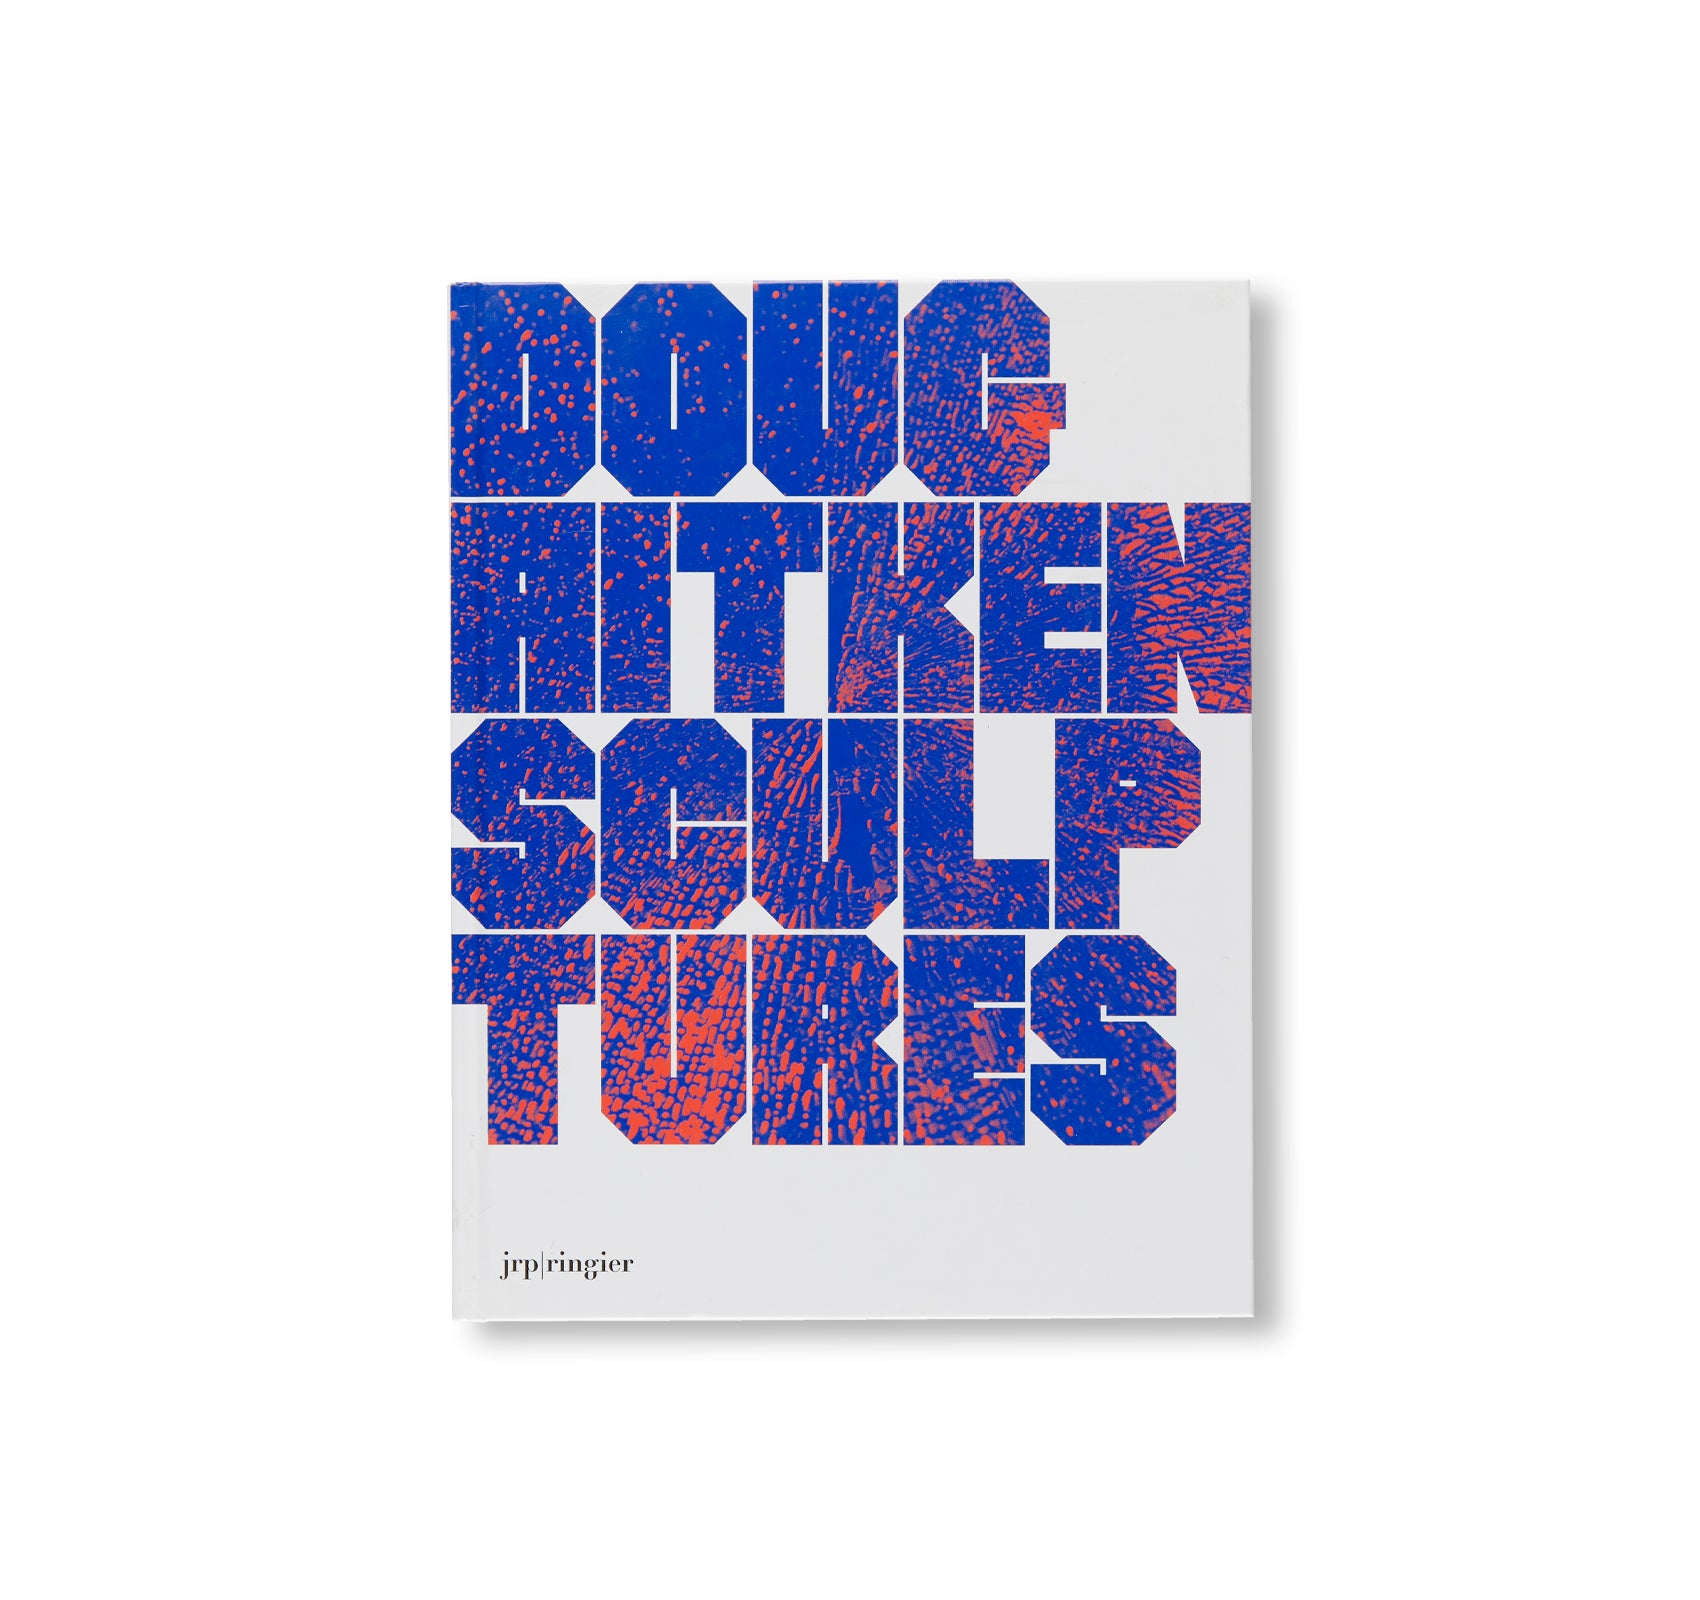 SCULPTURES 2001-2015 by Doug Aitken